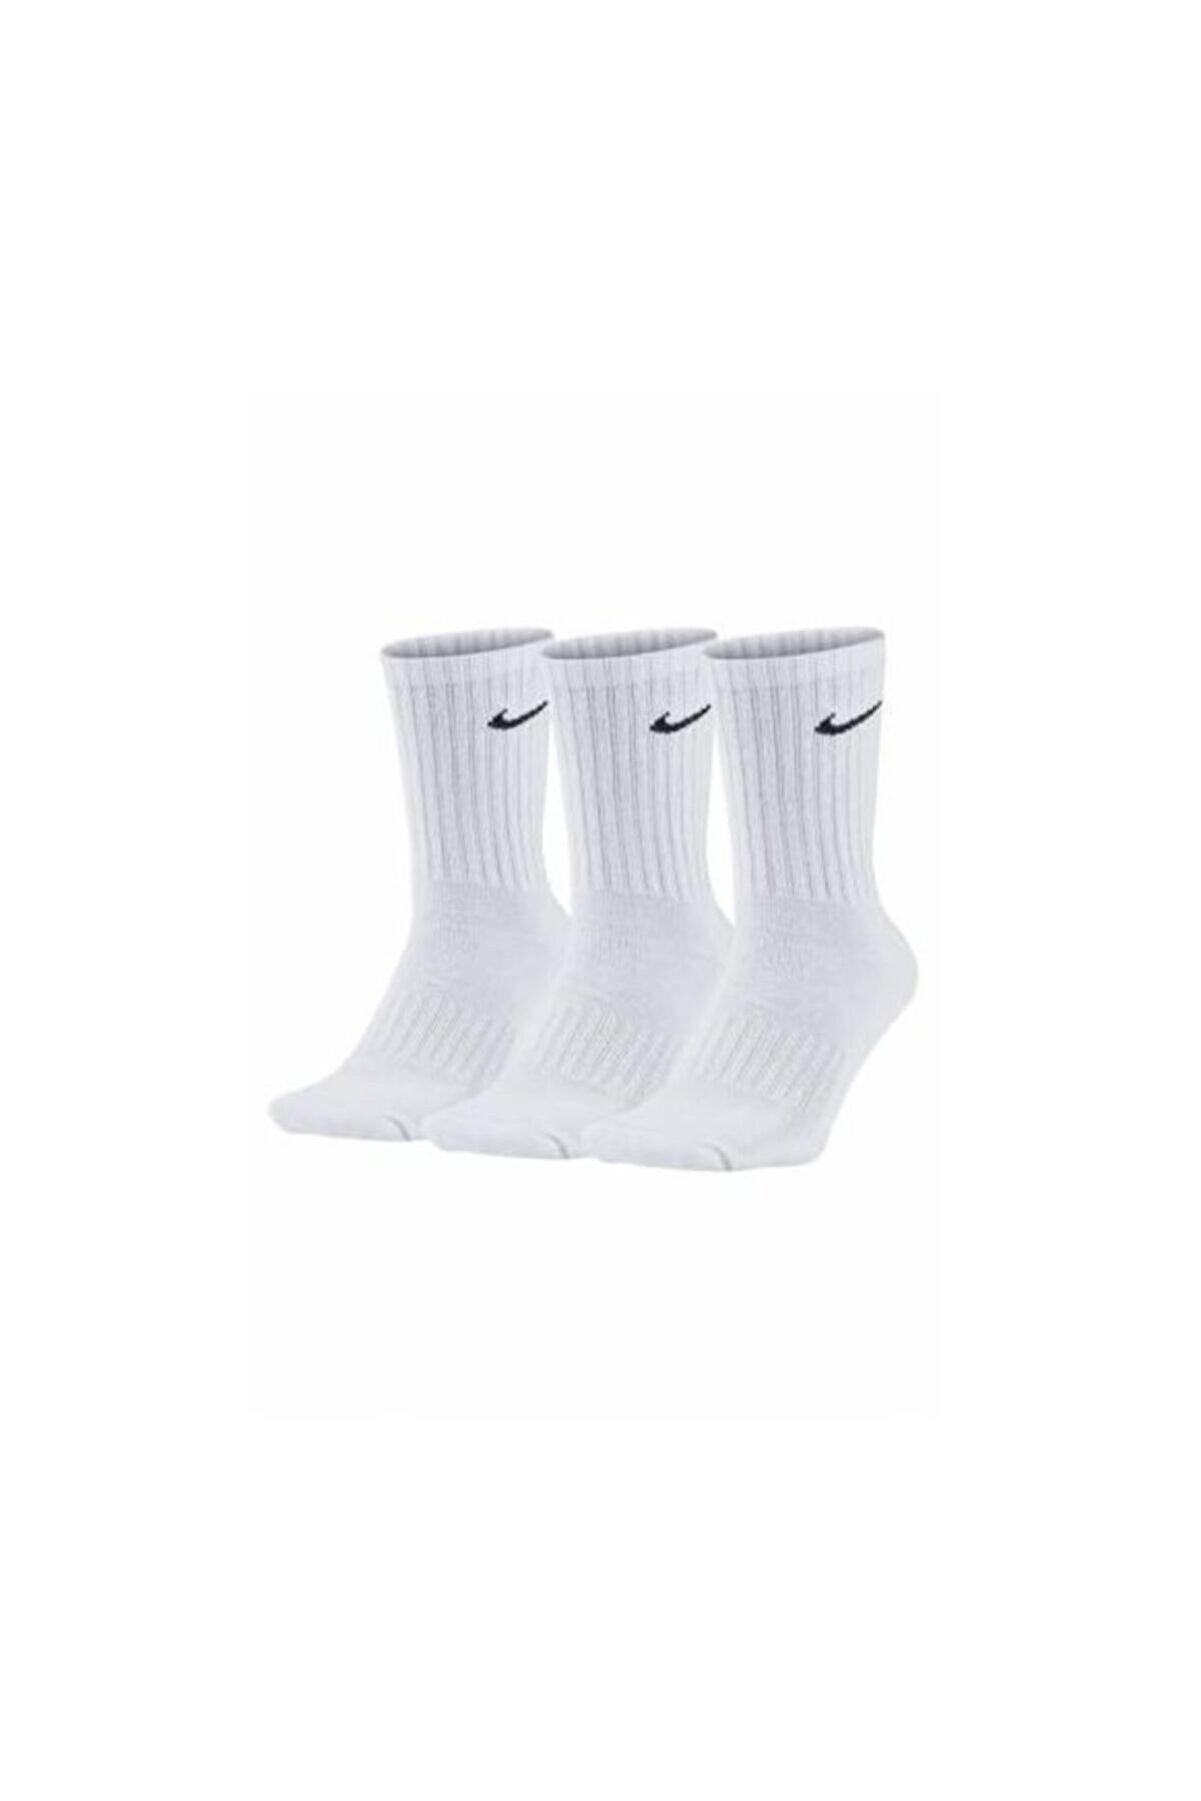 Nike Erkek Beyaz Everyday Cushioned Çorap 3'lü